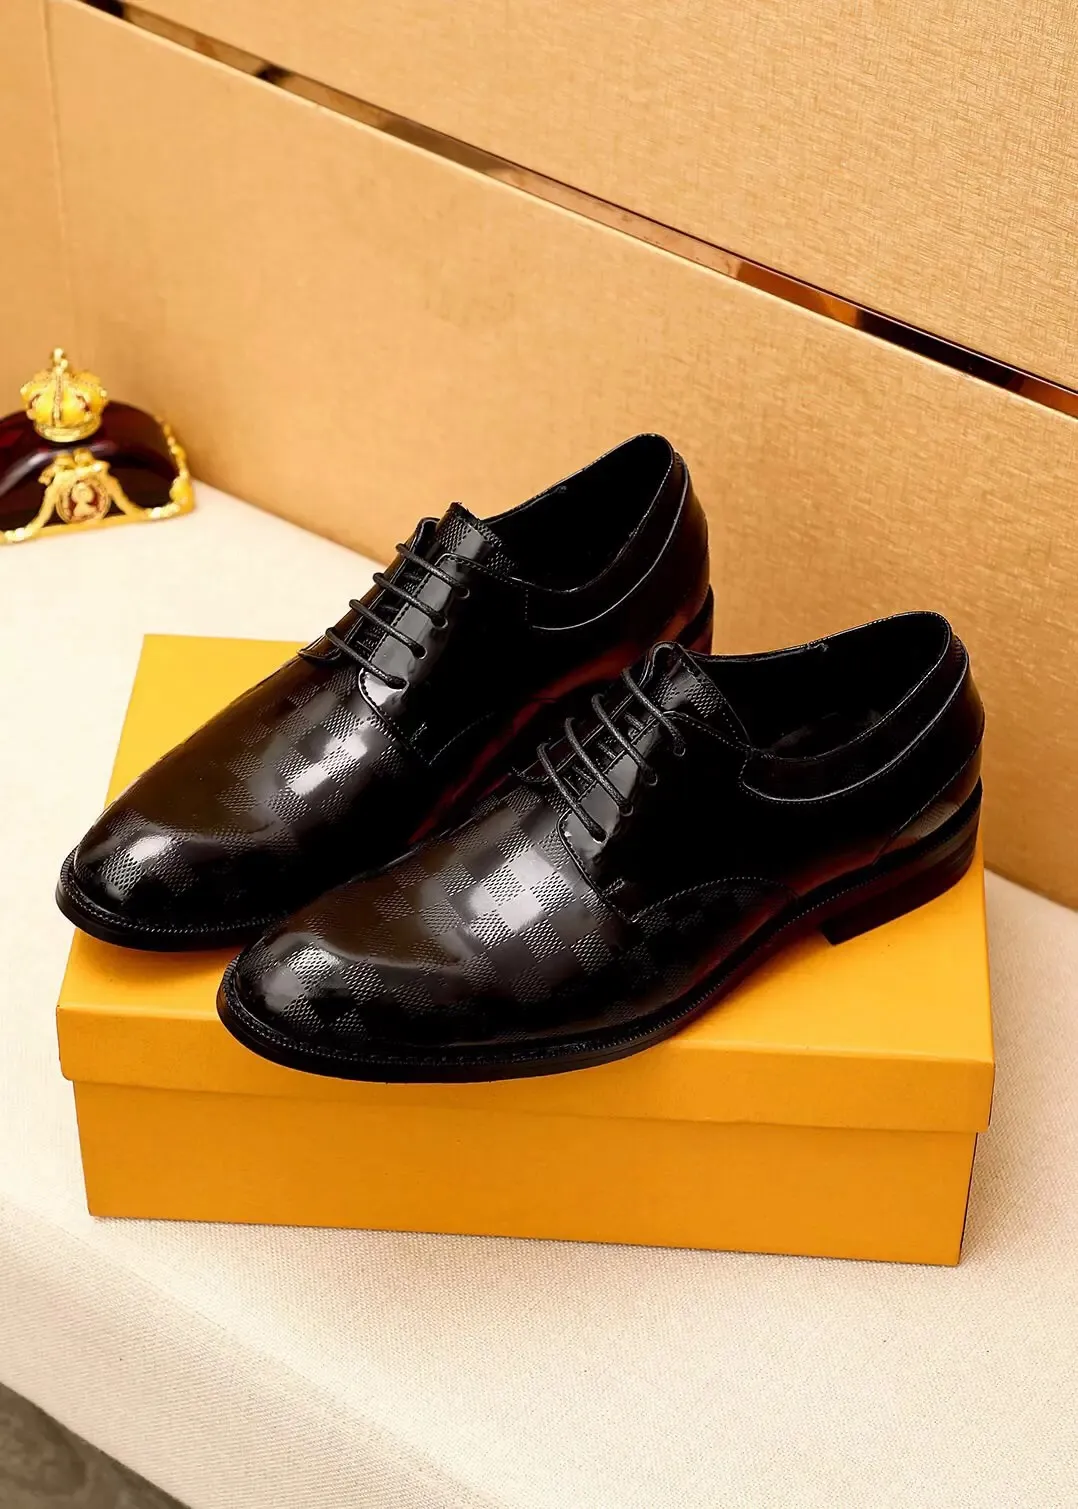 Mens Business Suit varum￤rkesdesigner kl￤nningskor m￤n ￤kta l￤der br￶llop mode oxfords bekv￤ma loafers storlek 38-45